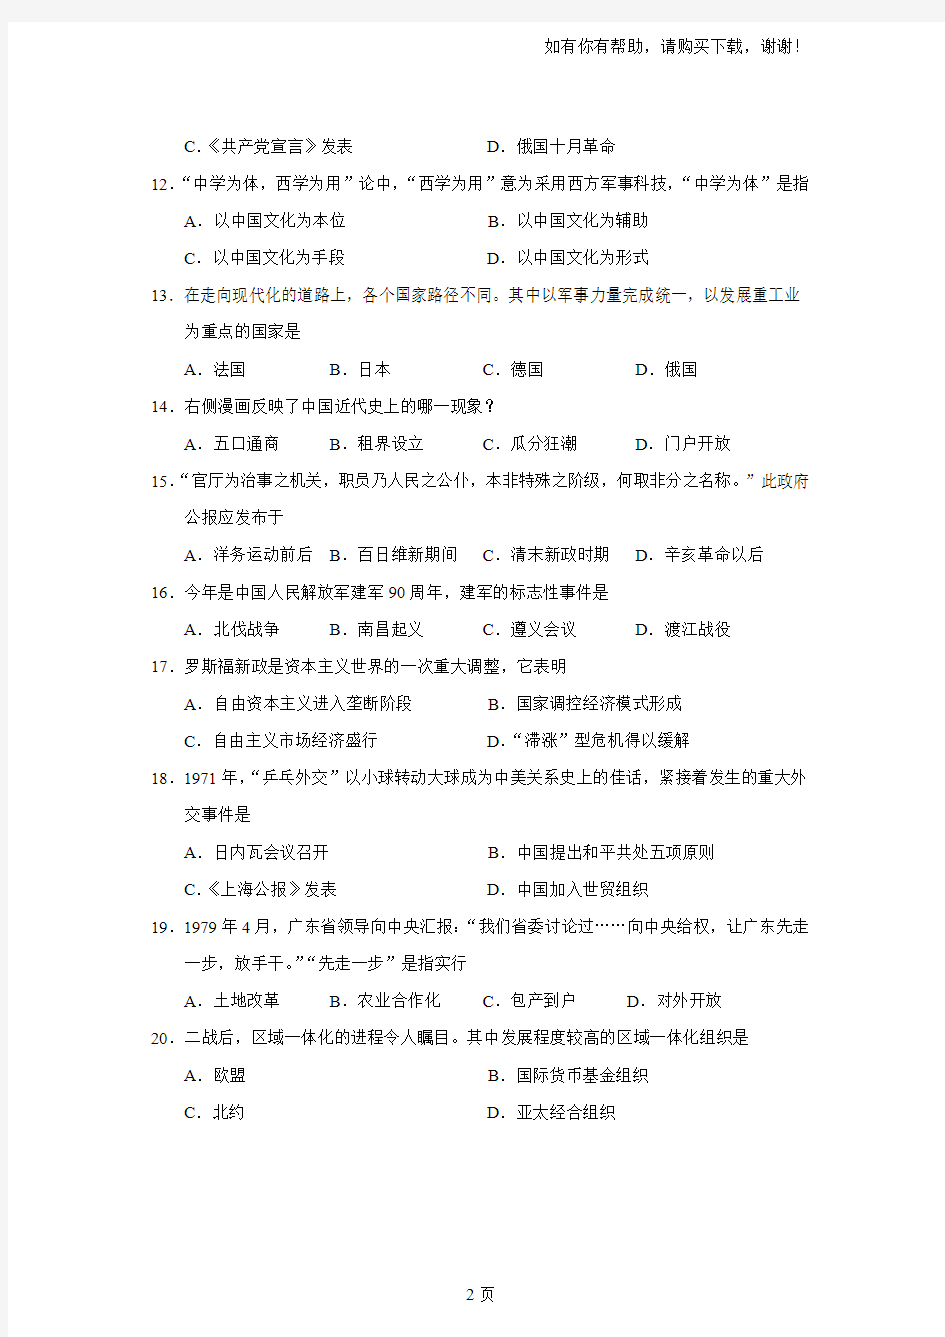 2017年上海普通高中等级性考试